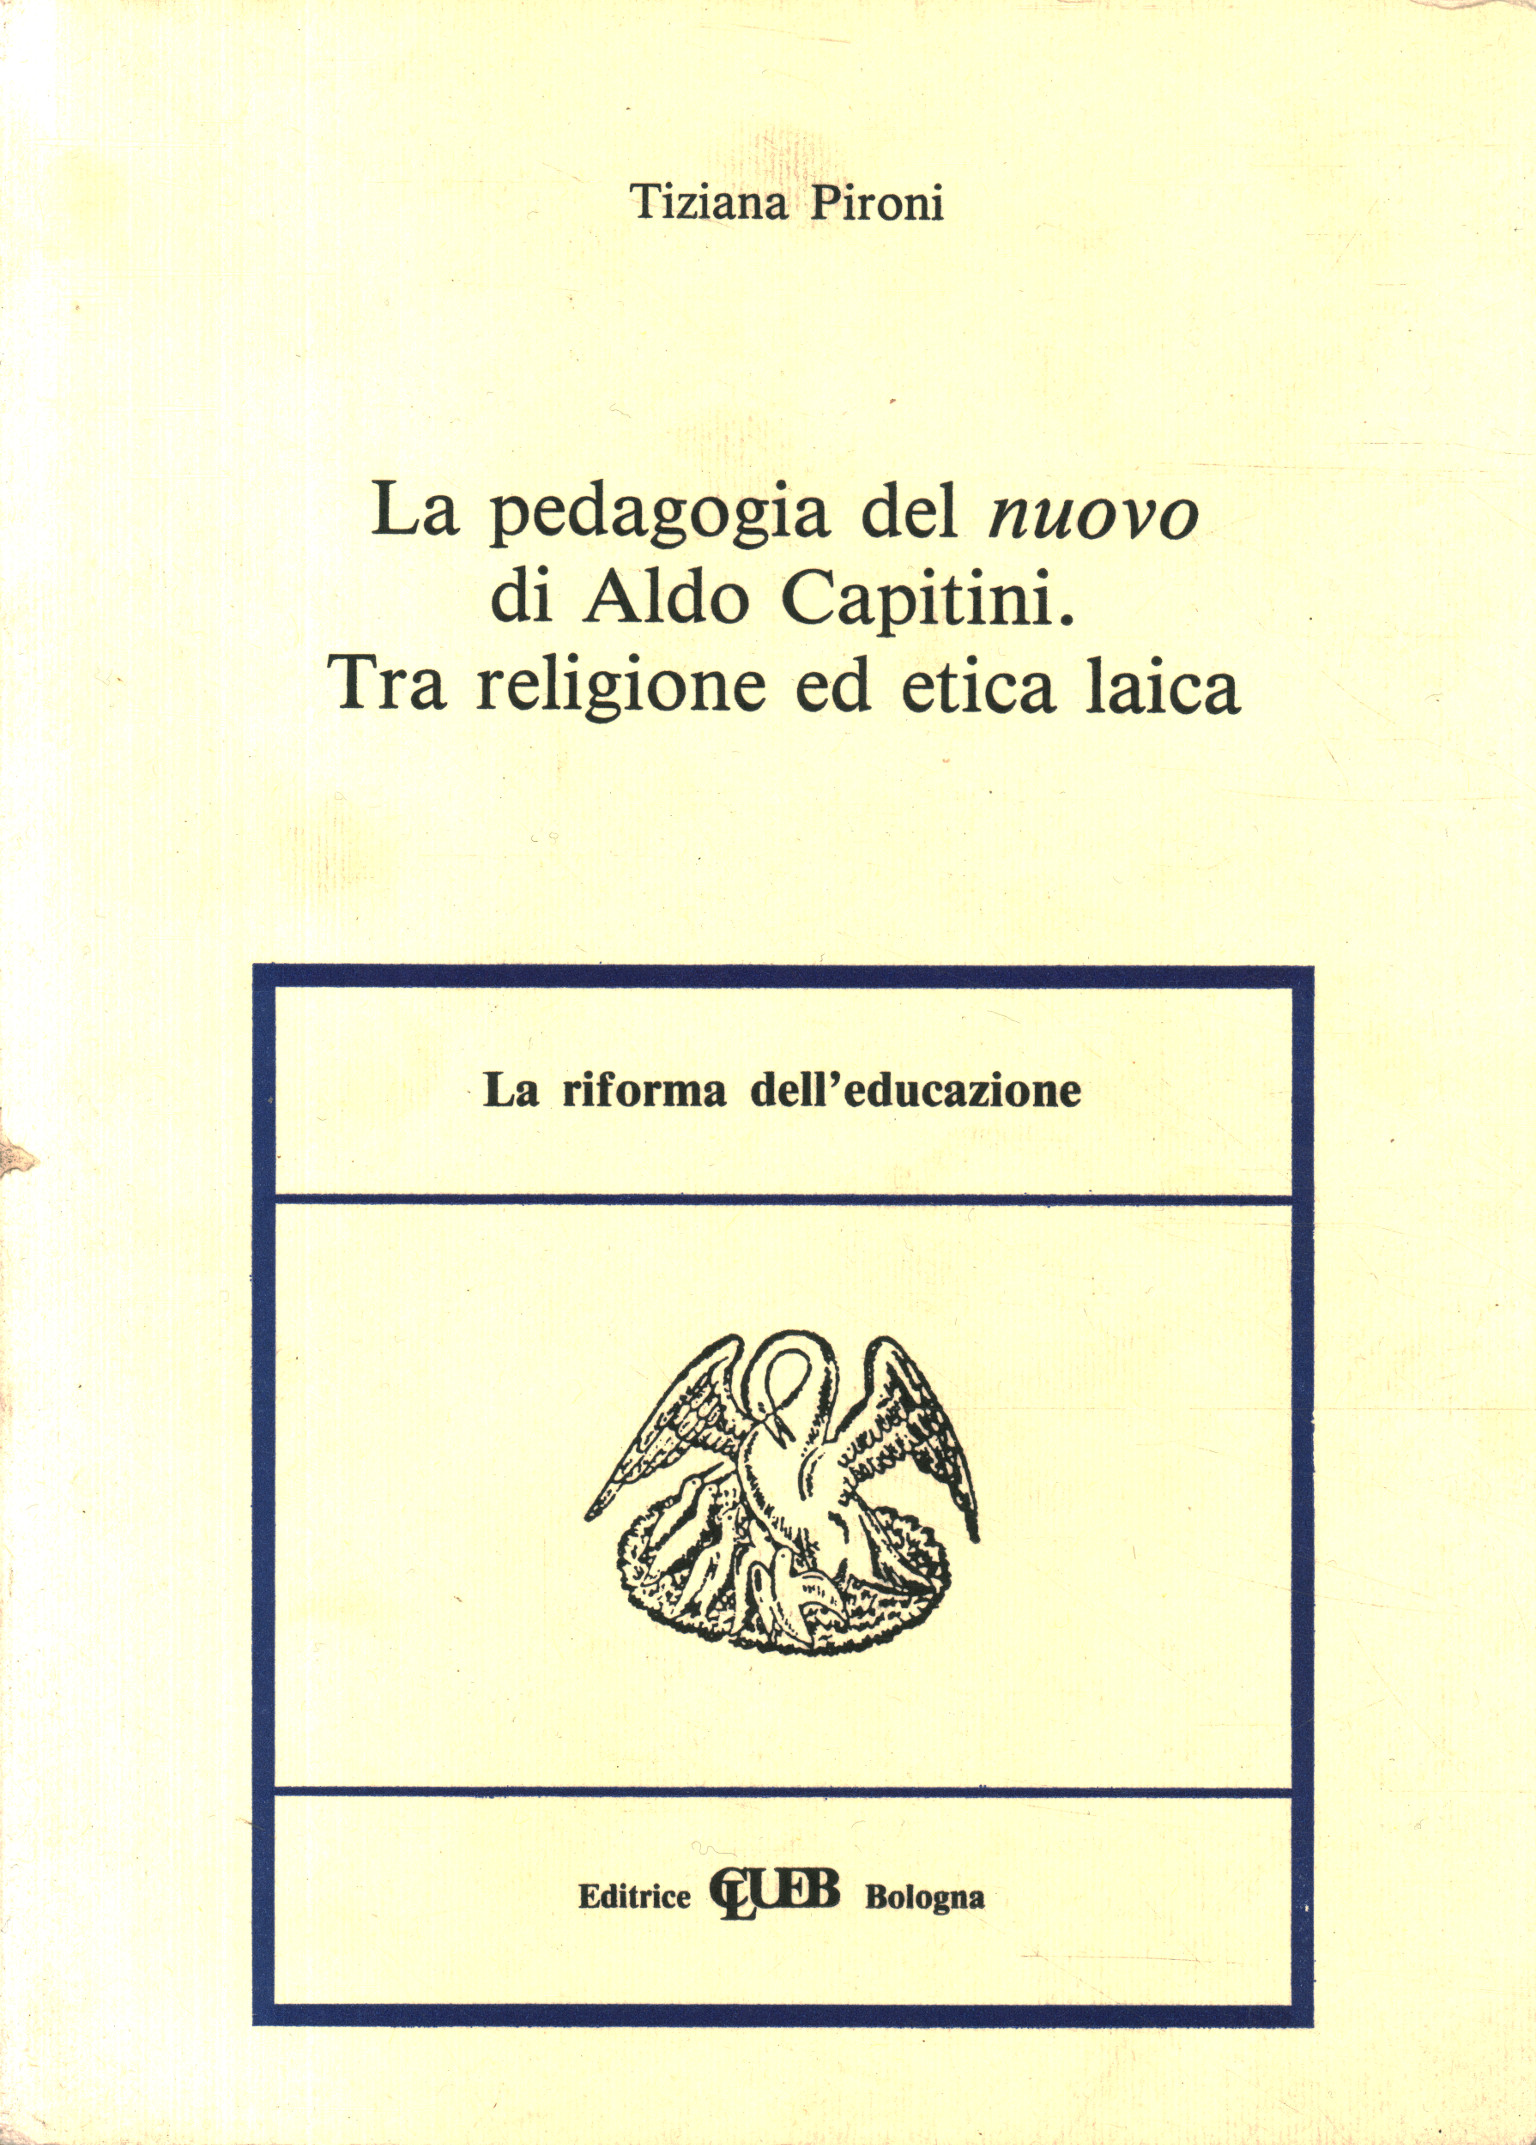 La pedagogia del nuovo di Aldo Capitin